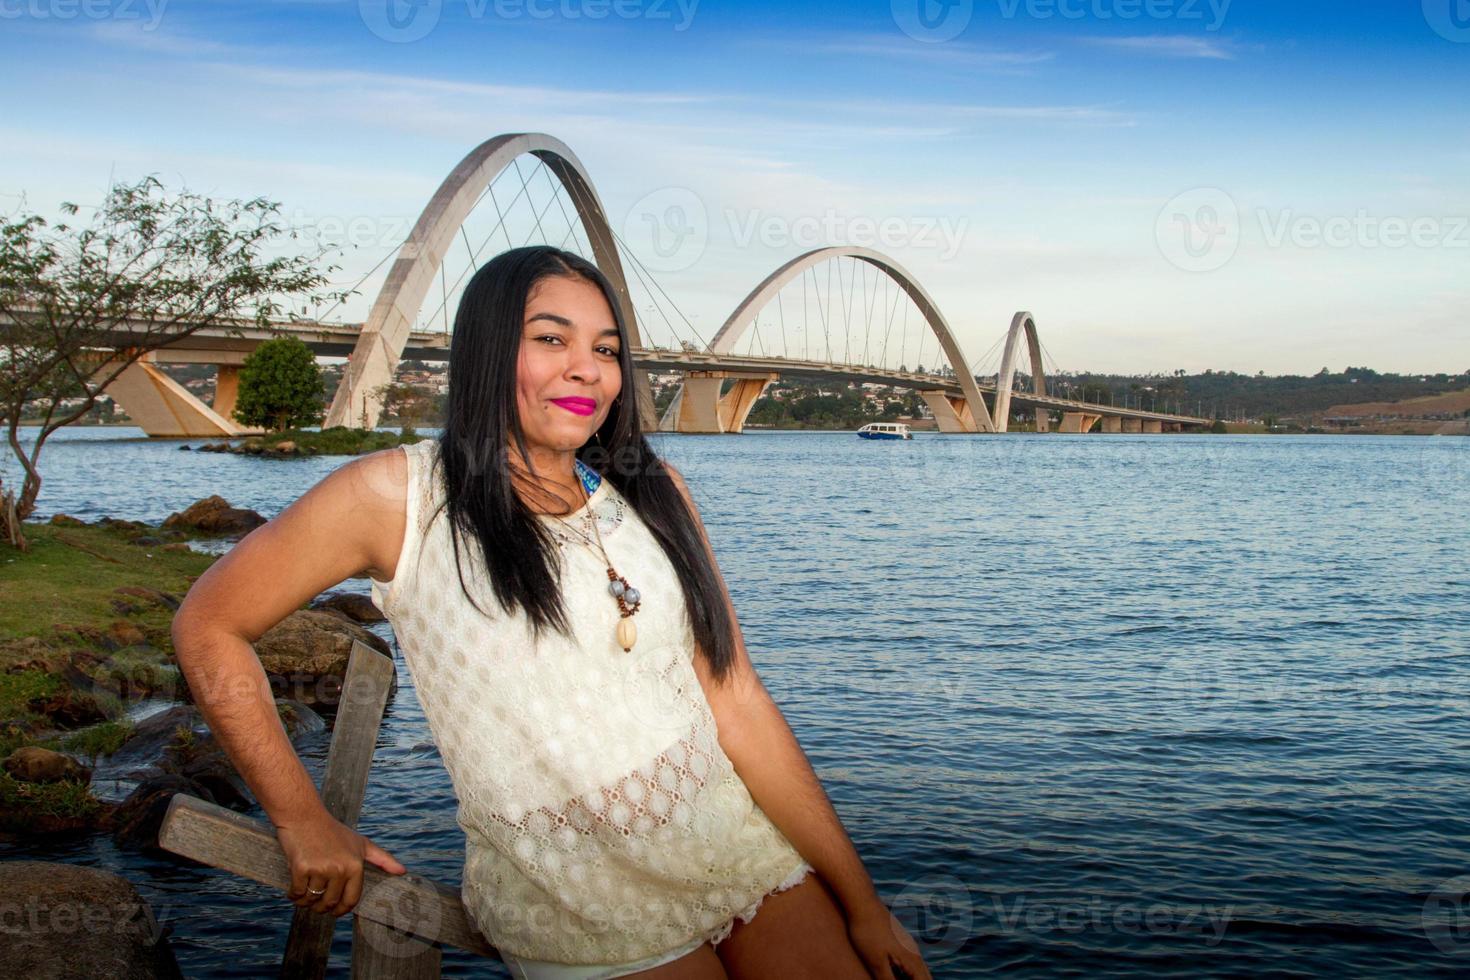 encantadora joven brasileña con una hermosa sonrisa en el parque con el puente jk en brasilia, en el fondo foto